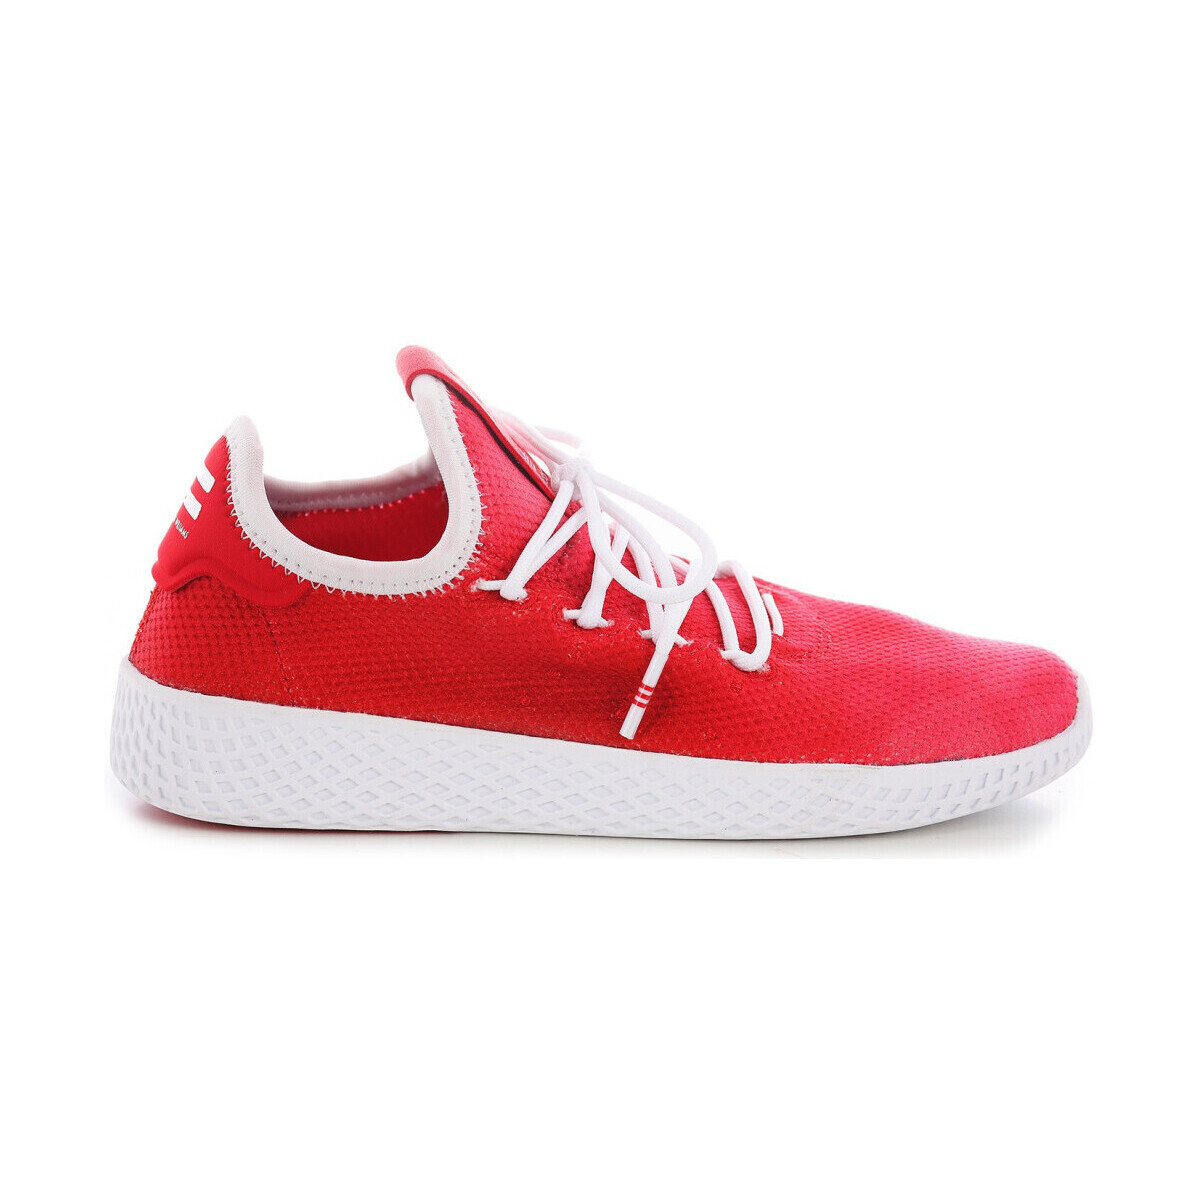 Zapatos Deportivas Moda adidas Originals -PHARRELL BB6838 Rojo